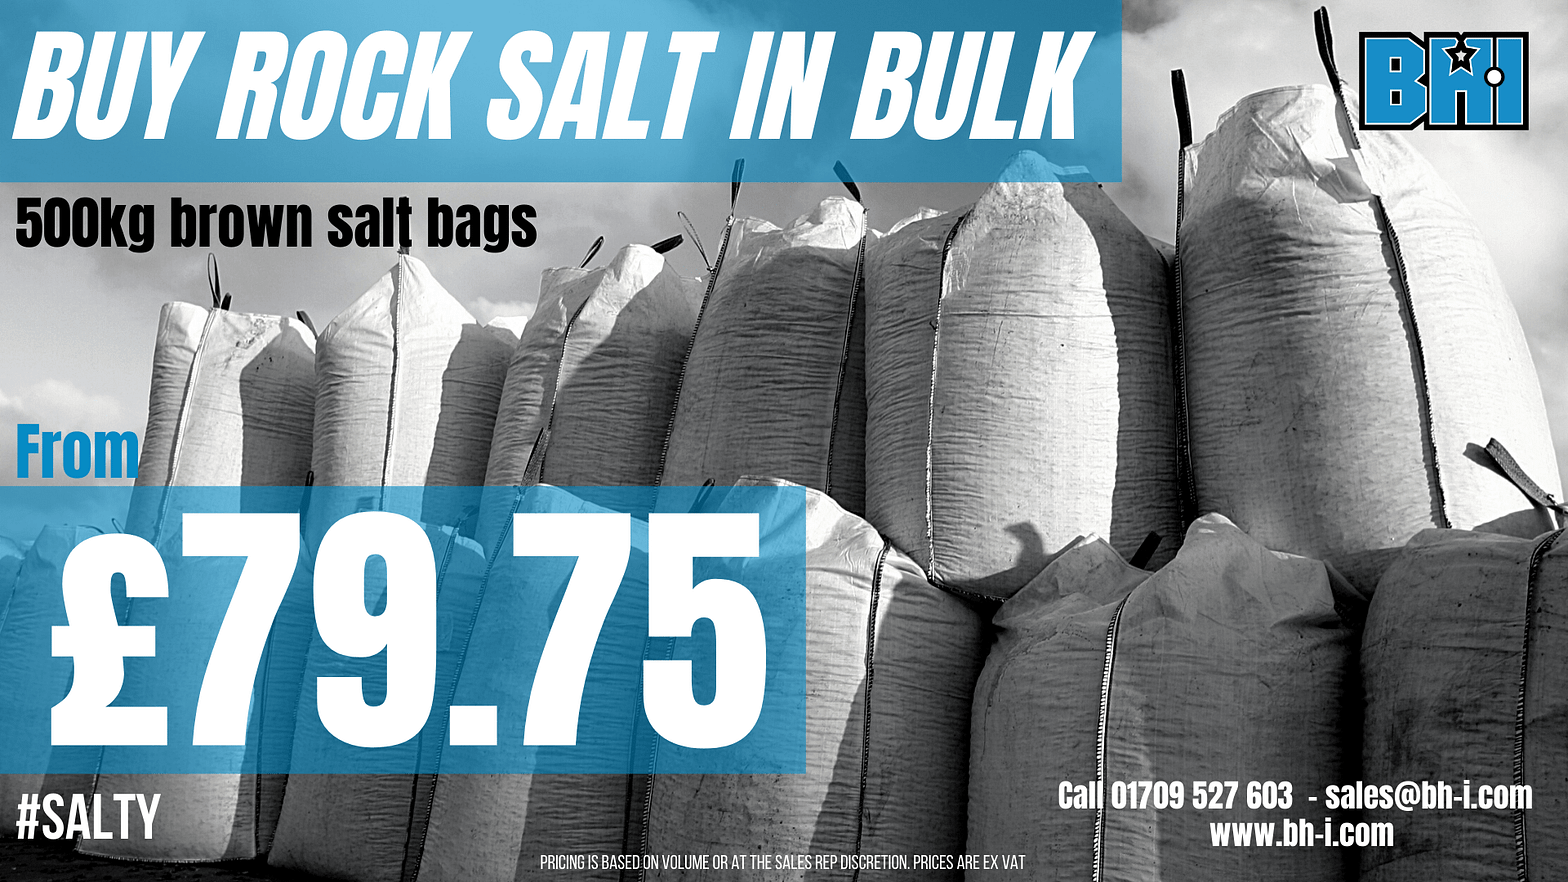 BHI rock Salt bulk offer 500kg